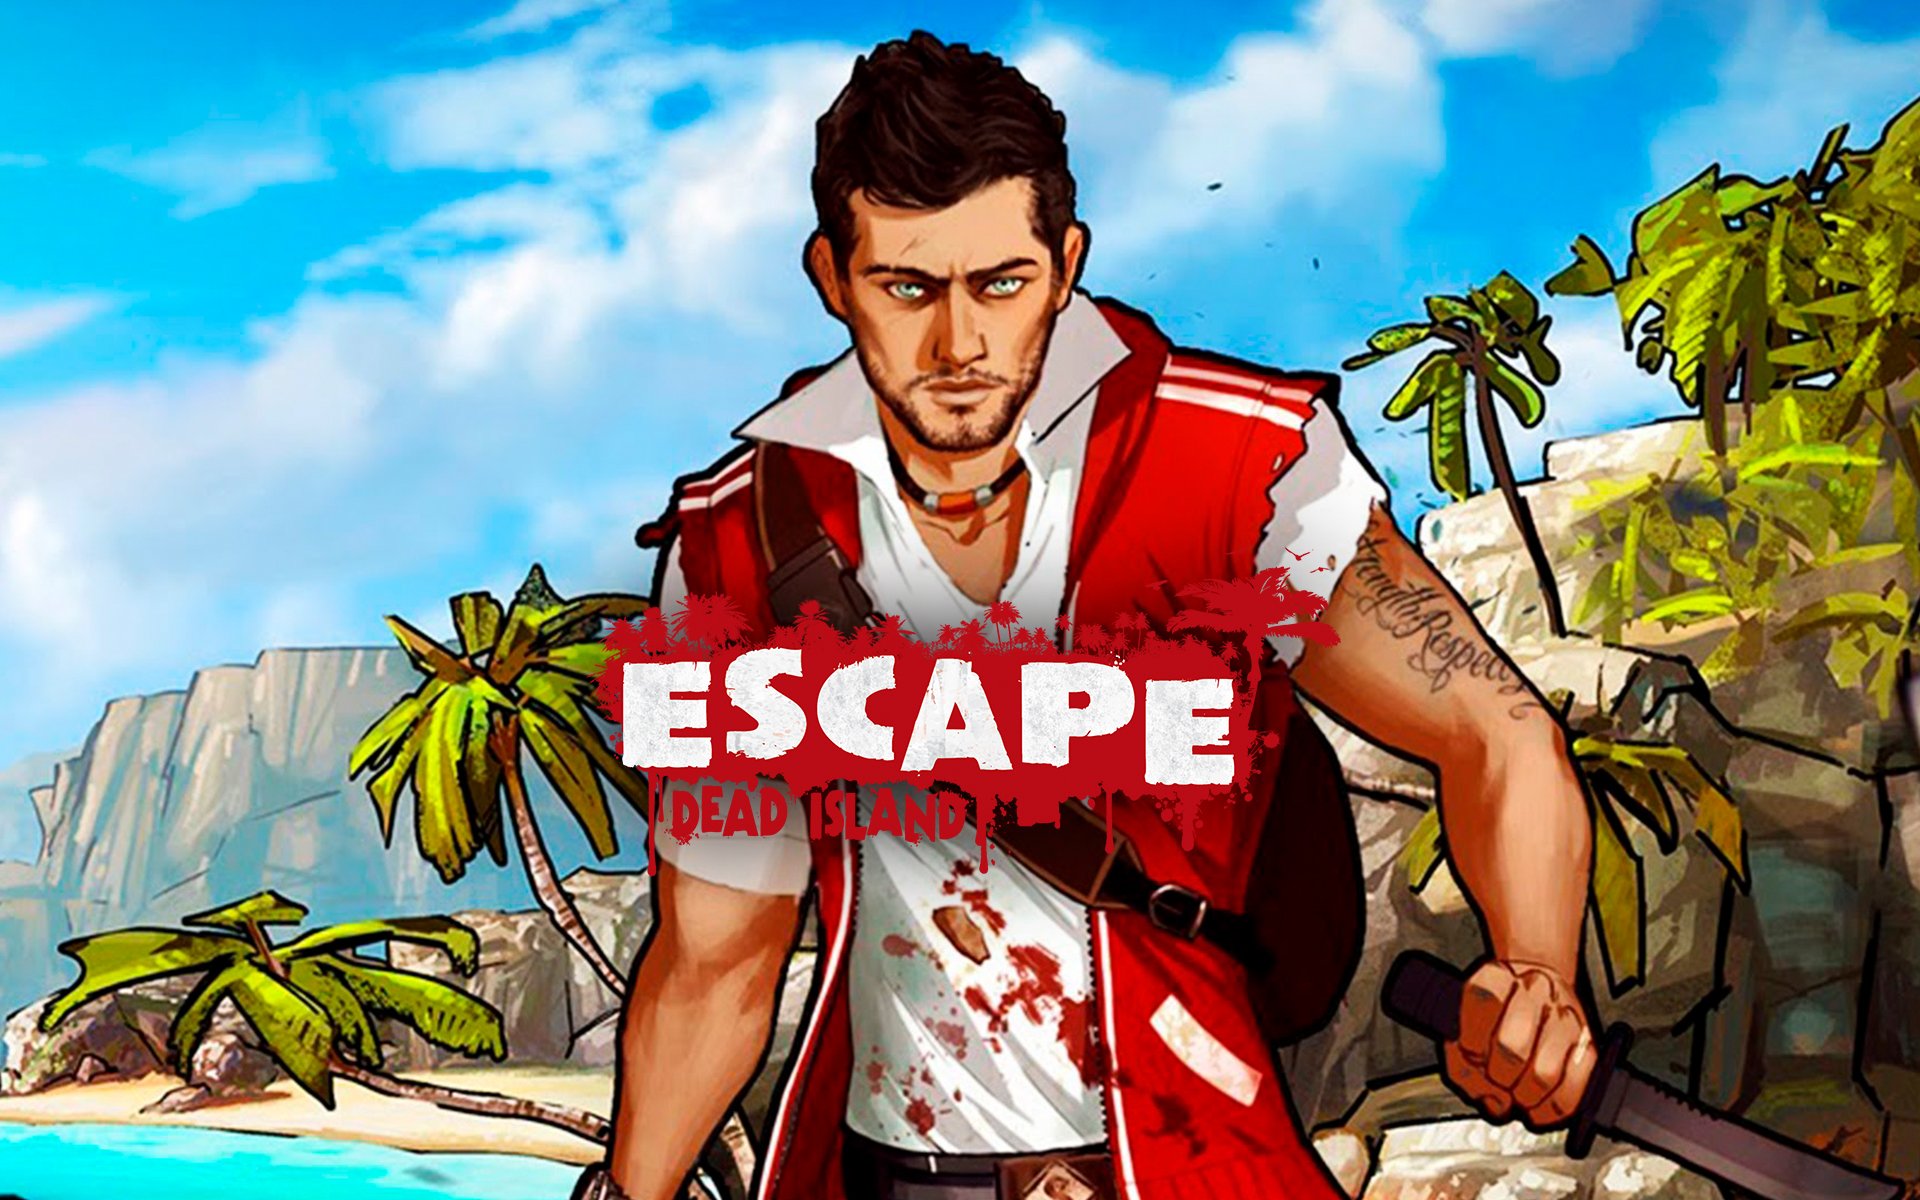 Comprar o Escape Dead Island